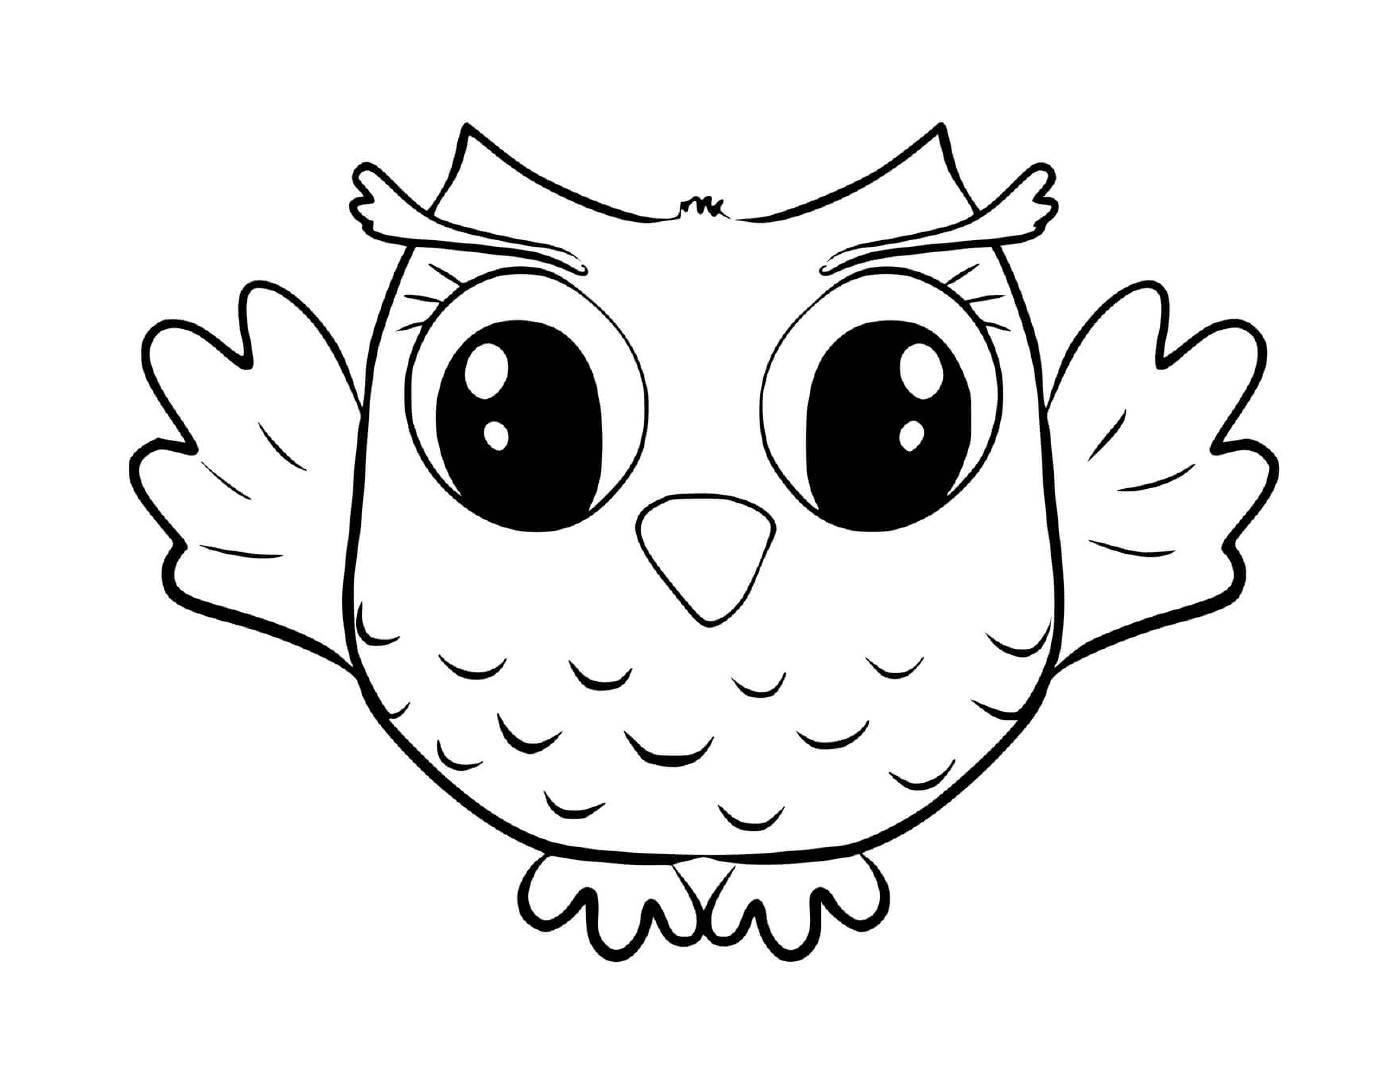  Cute little owl 